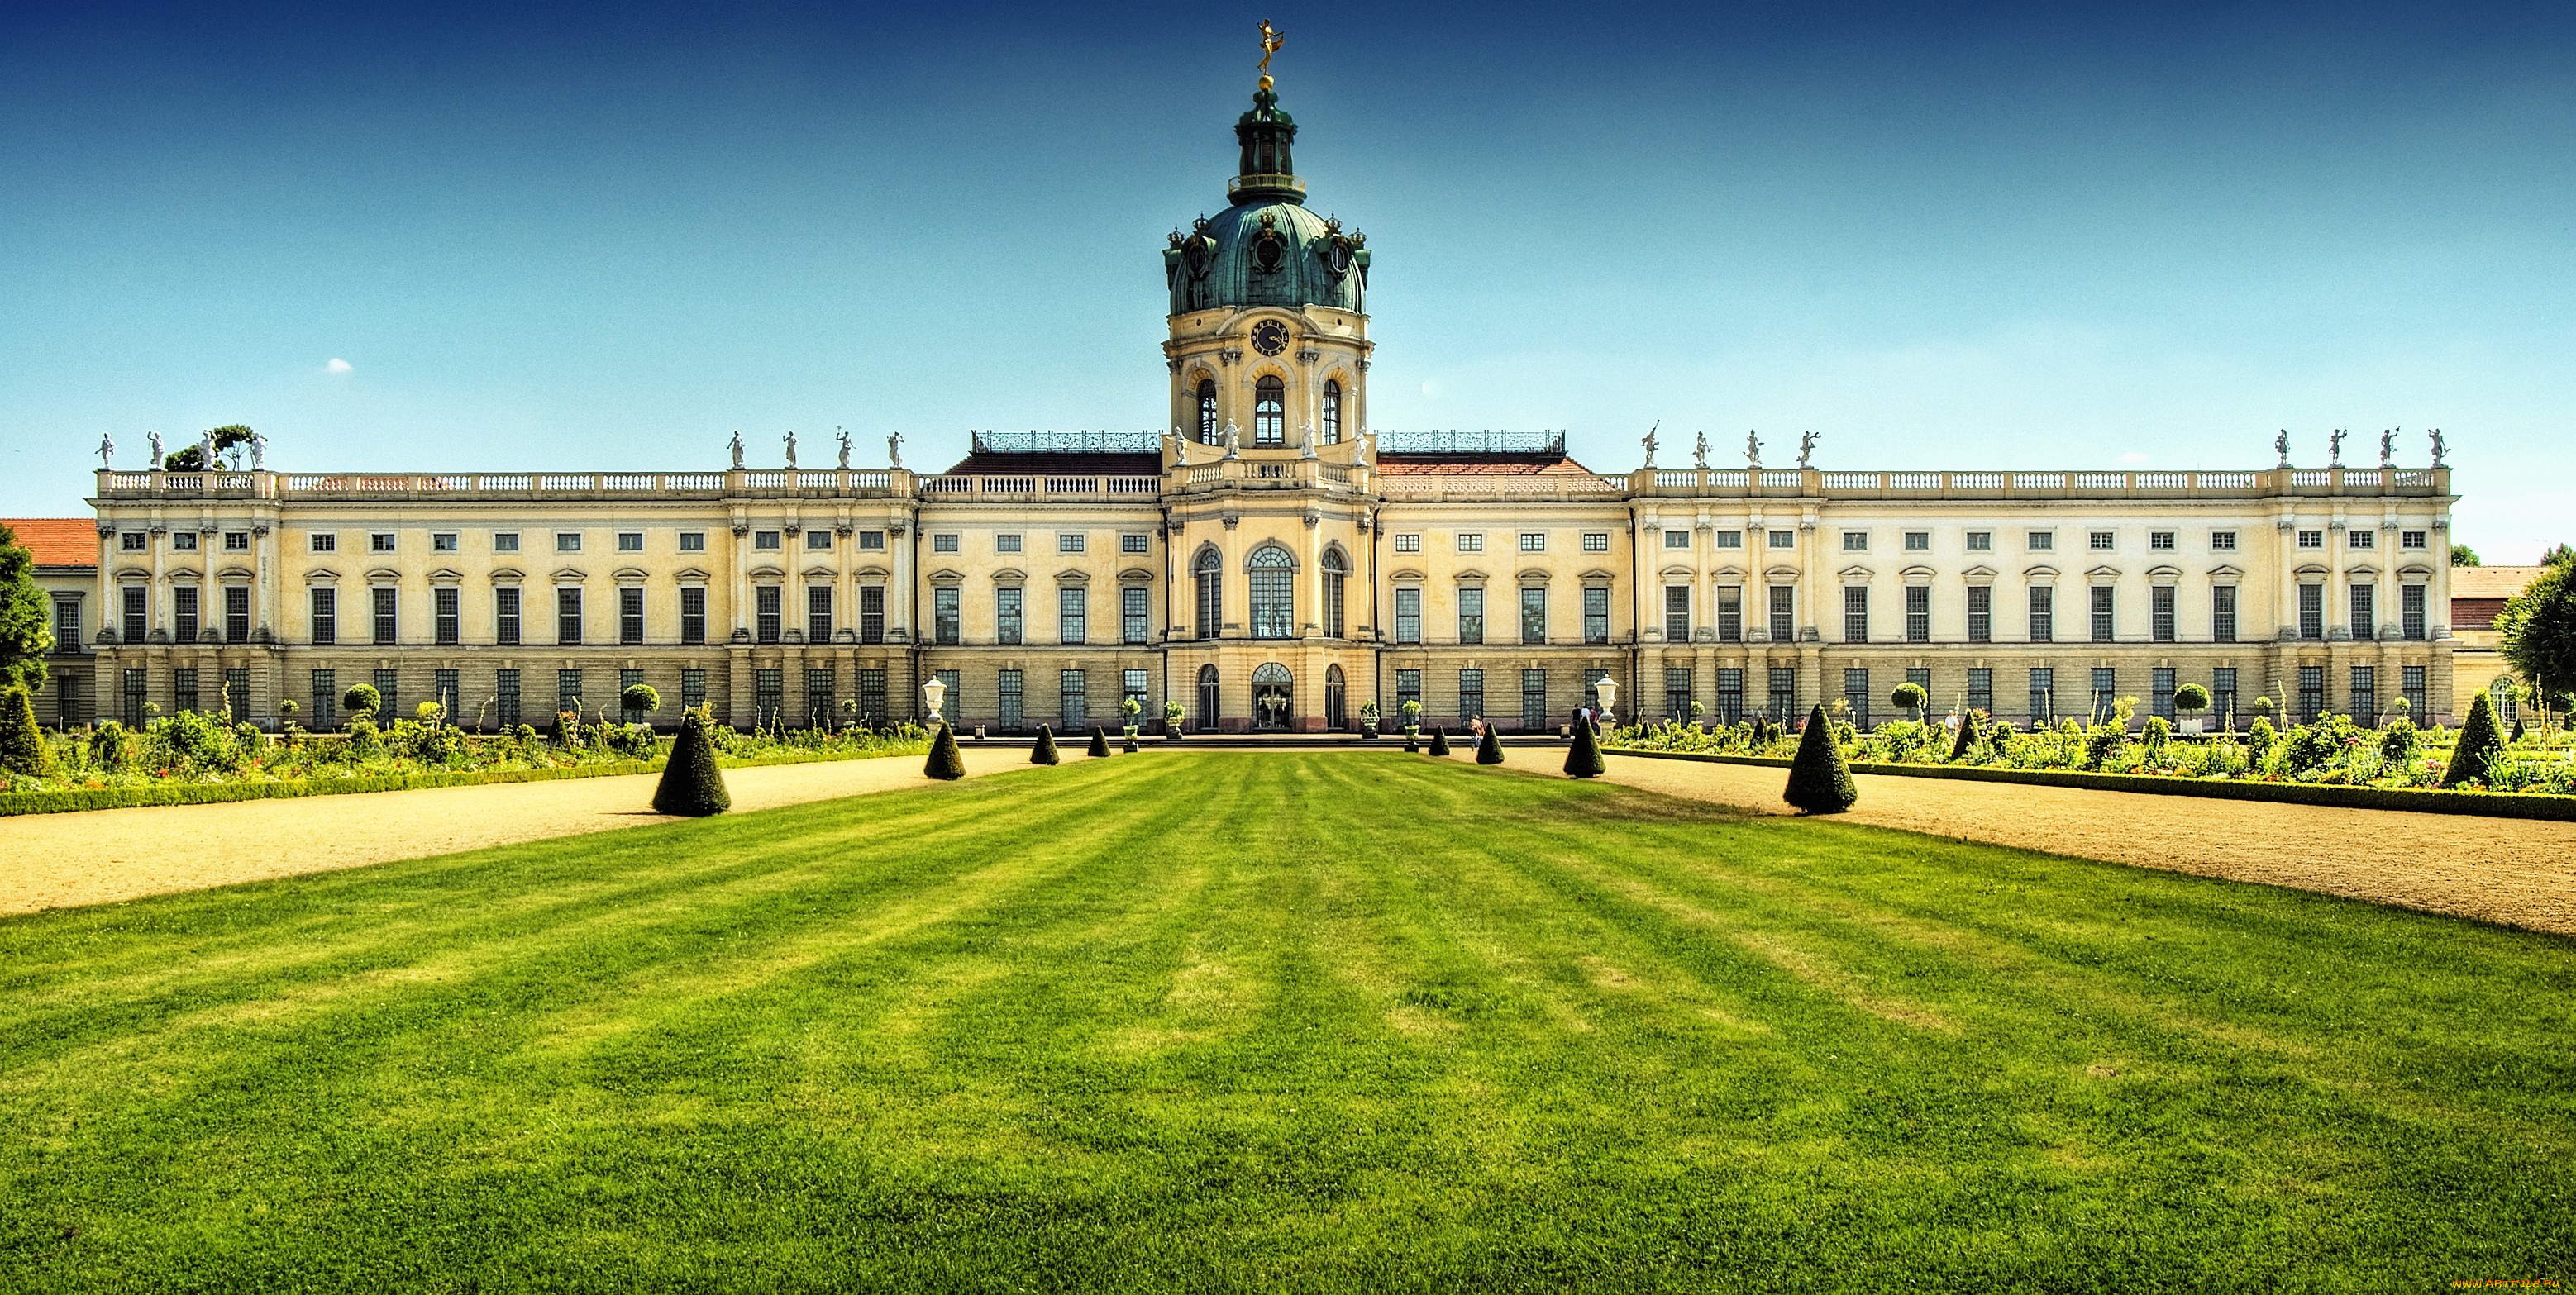 дворец, шарлоттенбург, германия, города, дворцы, замки, крепости, купол, окна, большой, парк